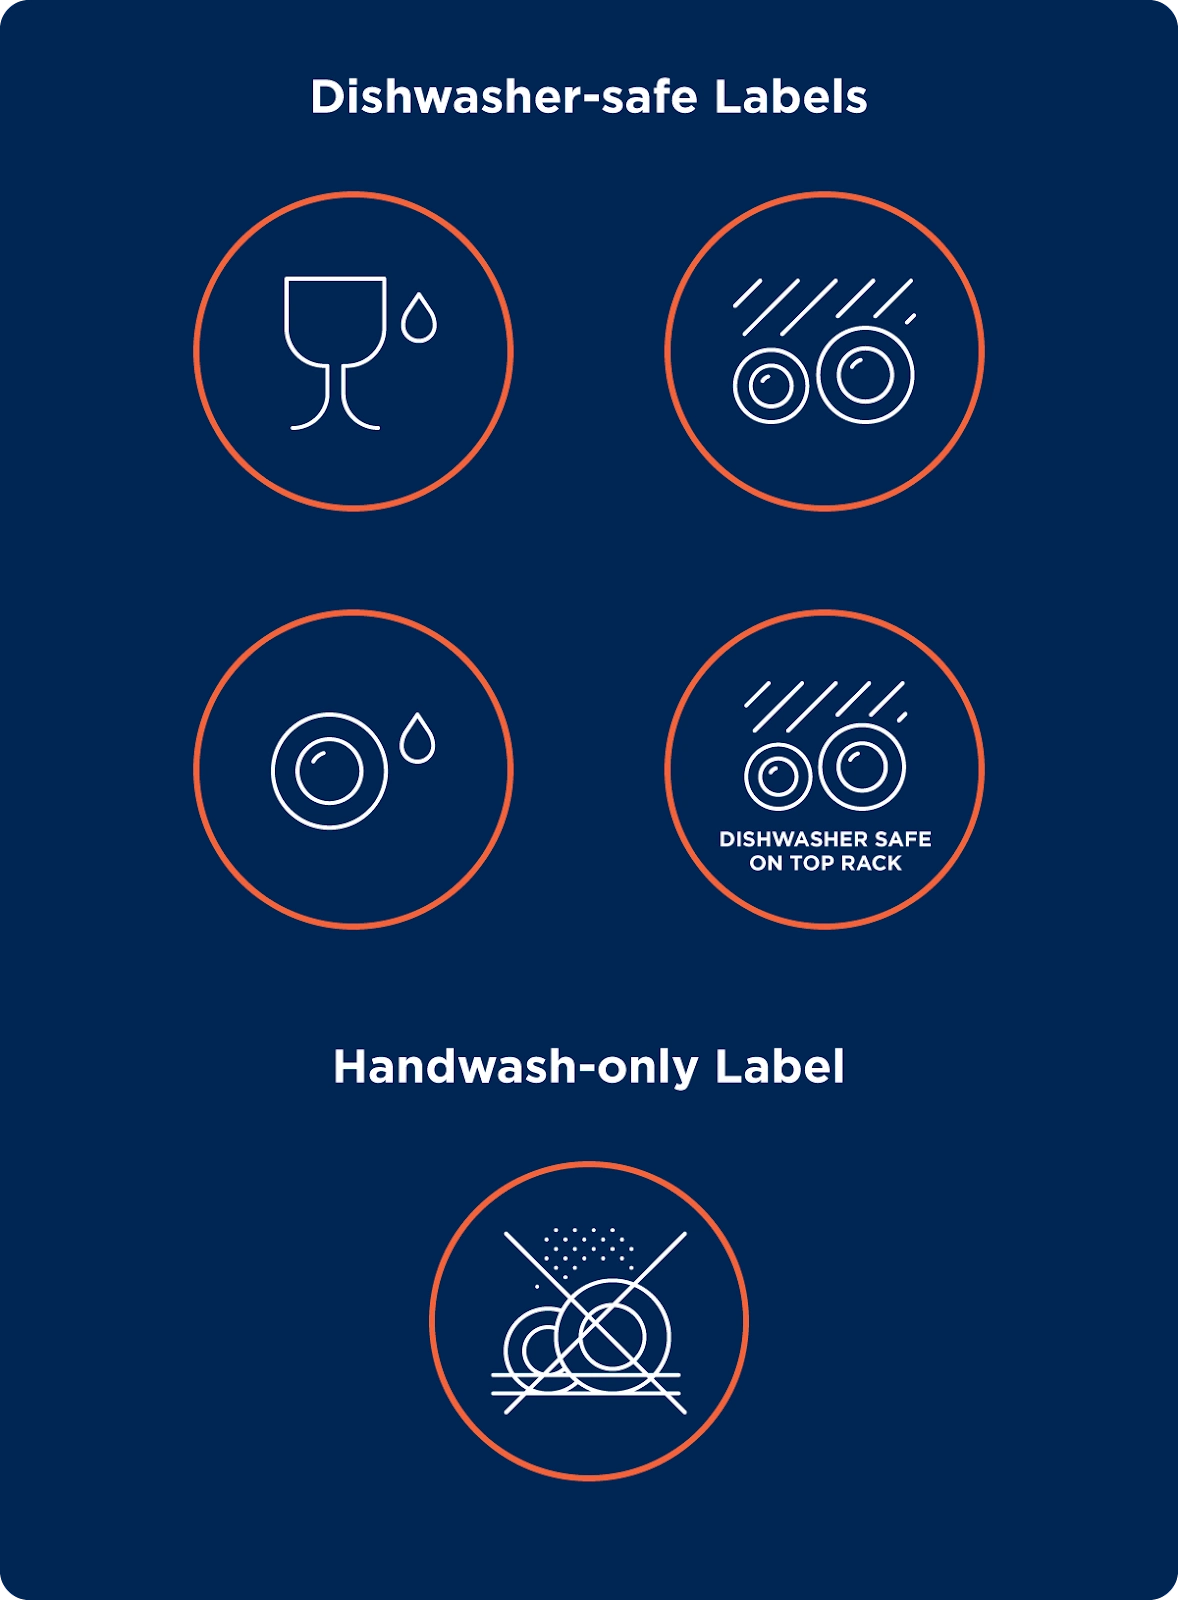 Diagram of dishwasher-safe and handwash-only labels